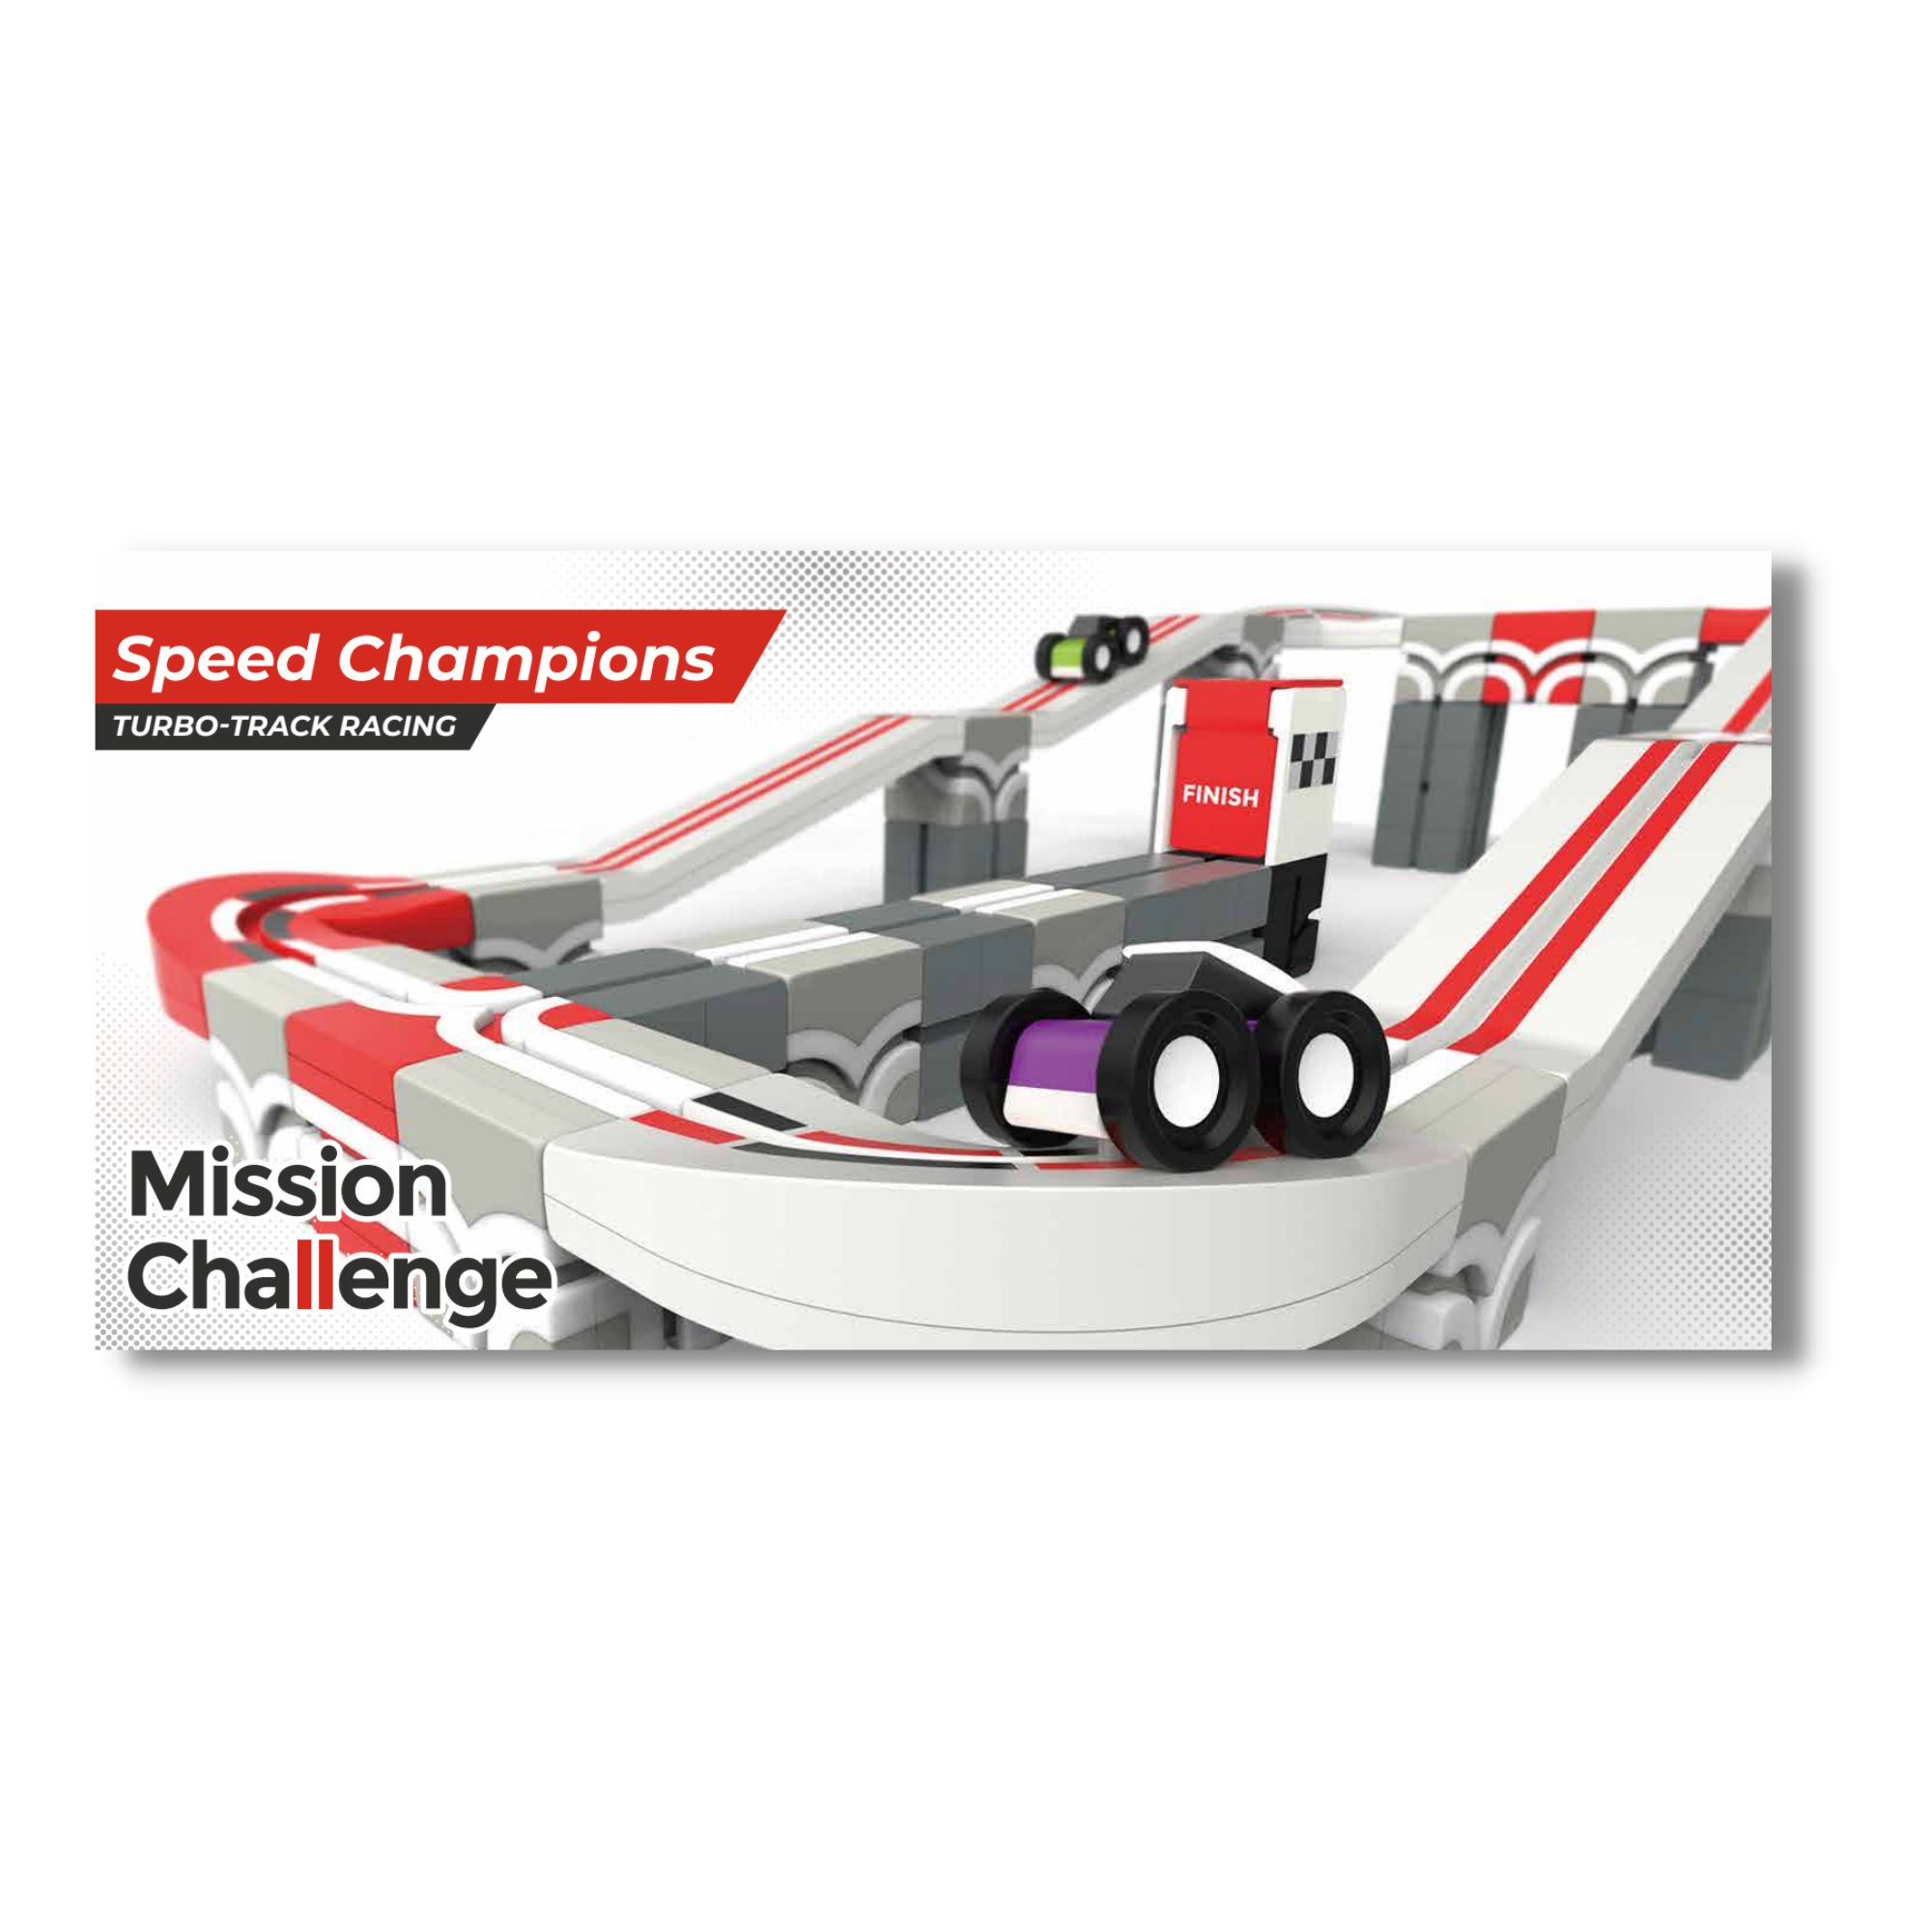 Qbi Speed Championsチャレンジカード